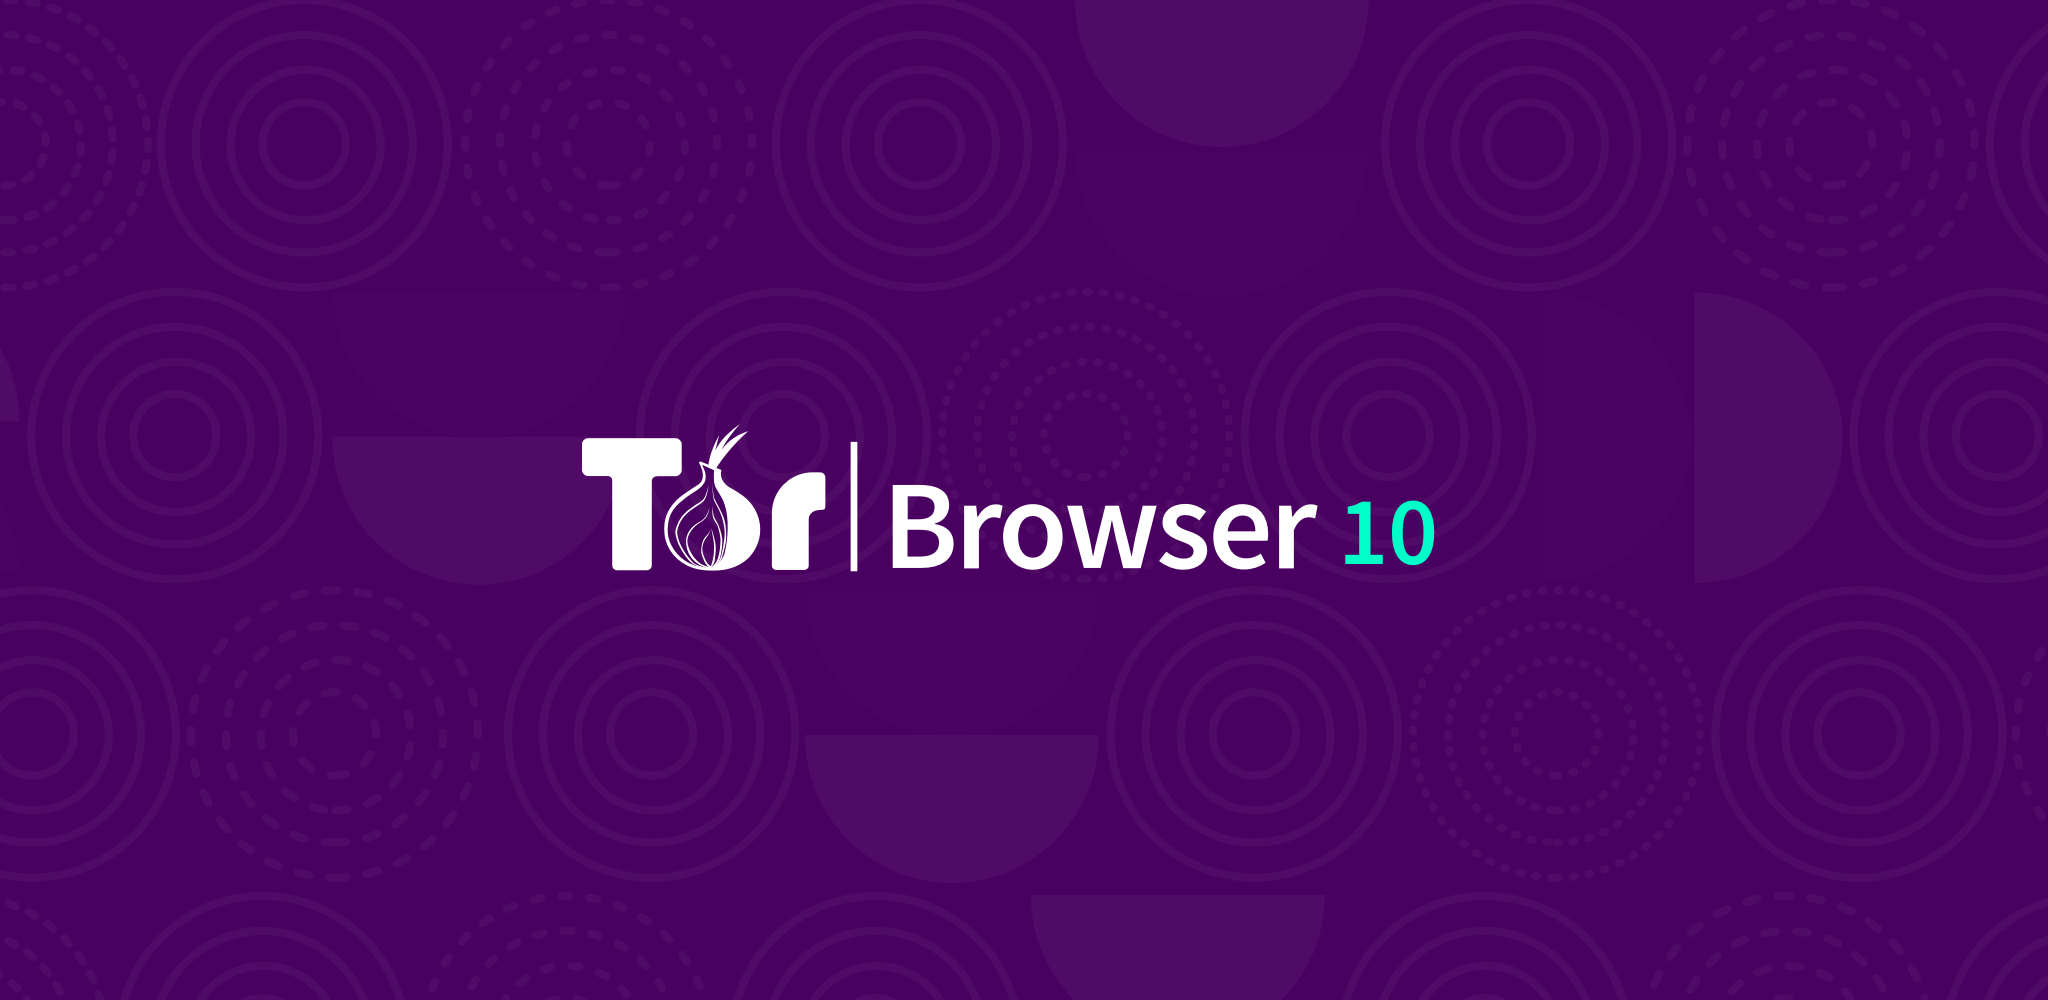 Tor browser для windows 8 скачать mega как запускать браузер тор mega